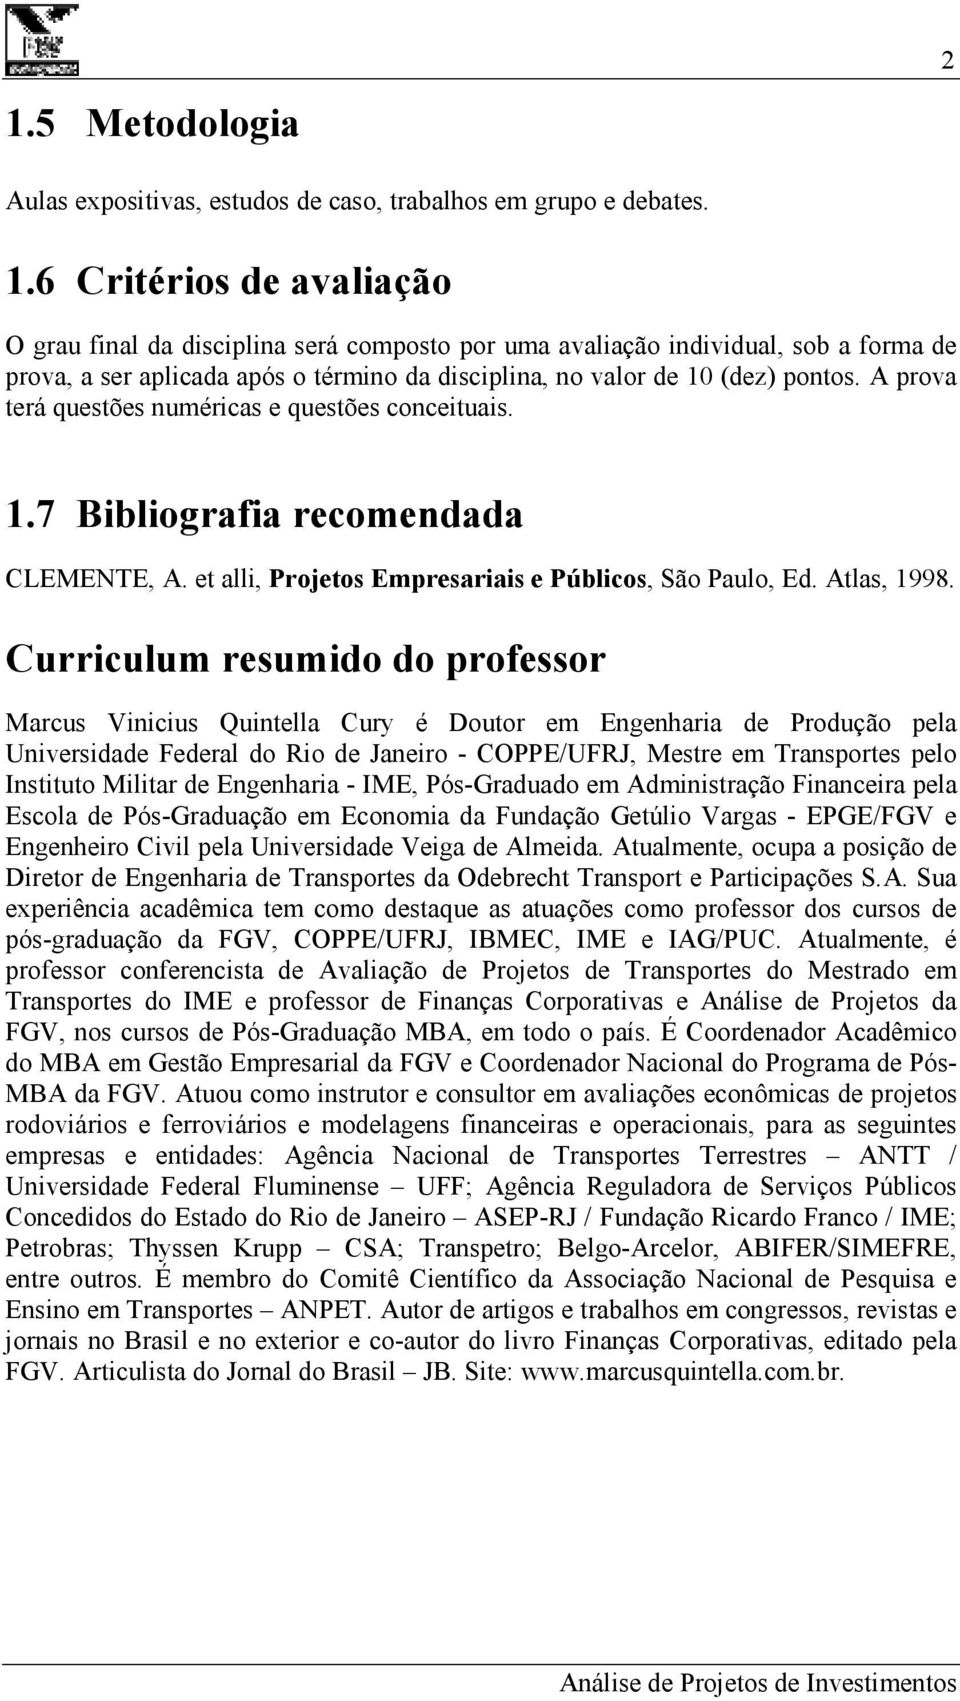 Curriculum resumido do professor Marcus Vinicius Quintella Cury é Doutor em Engenharia de Produção pela Universidade Federal do Rio de Janeiro - COPPE/UFRJ, Mestre em Transportes pelo Instituto